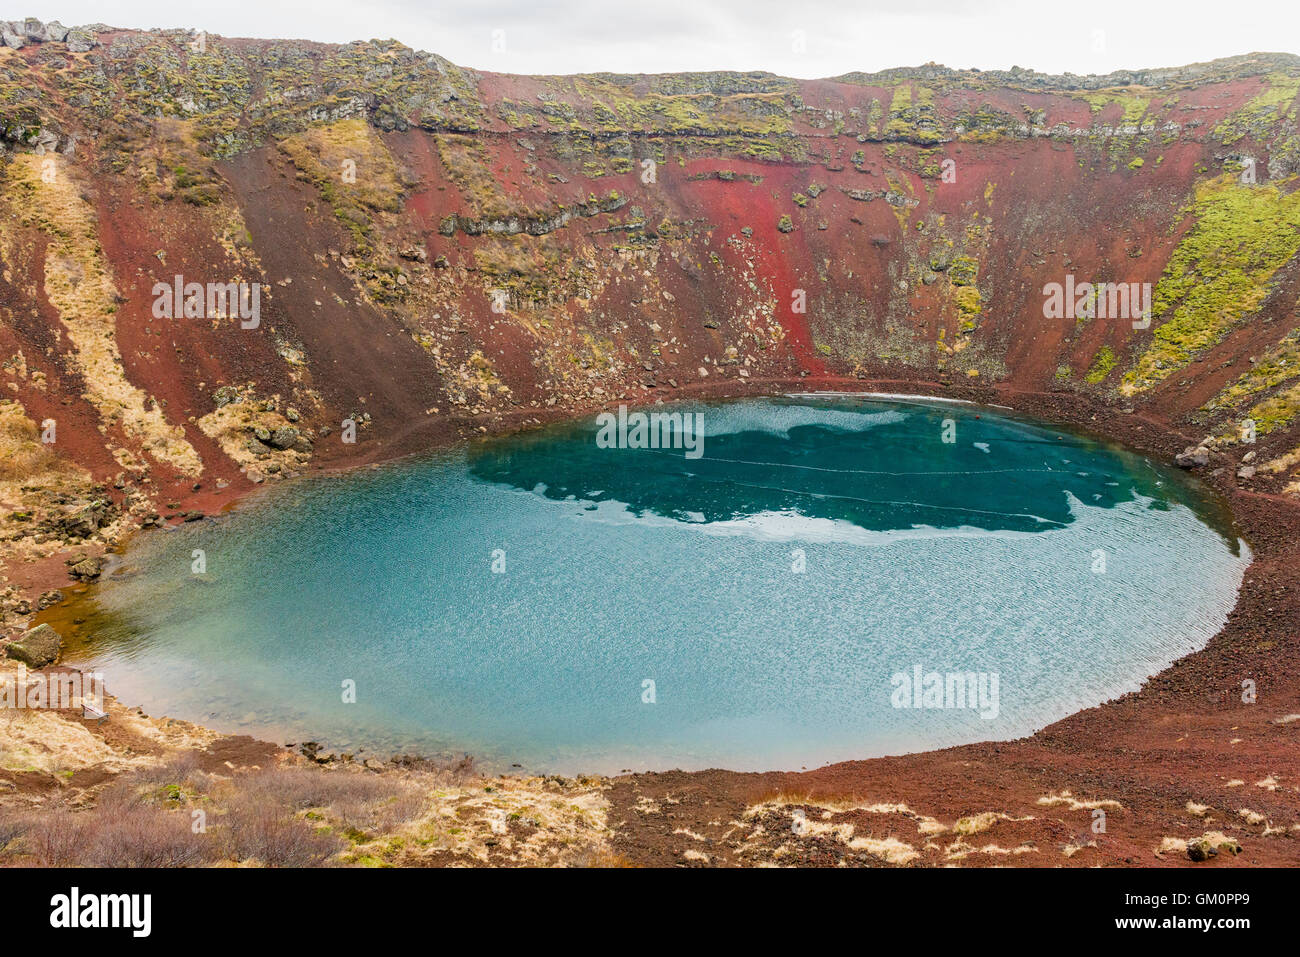 Kerið Volcanic Crater Lake in Grimsnes, Islanda è stata formata circa 6500 anni fa e si trova nella parte occidentale della zona vulcanica. Foto Stock